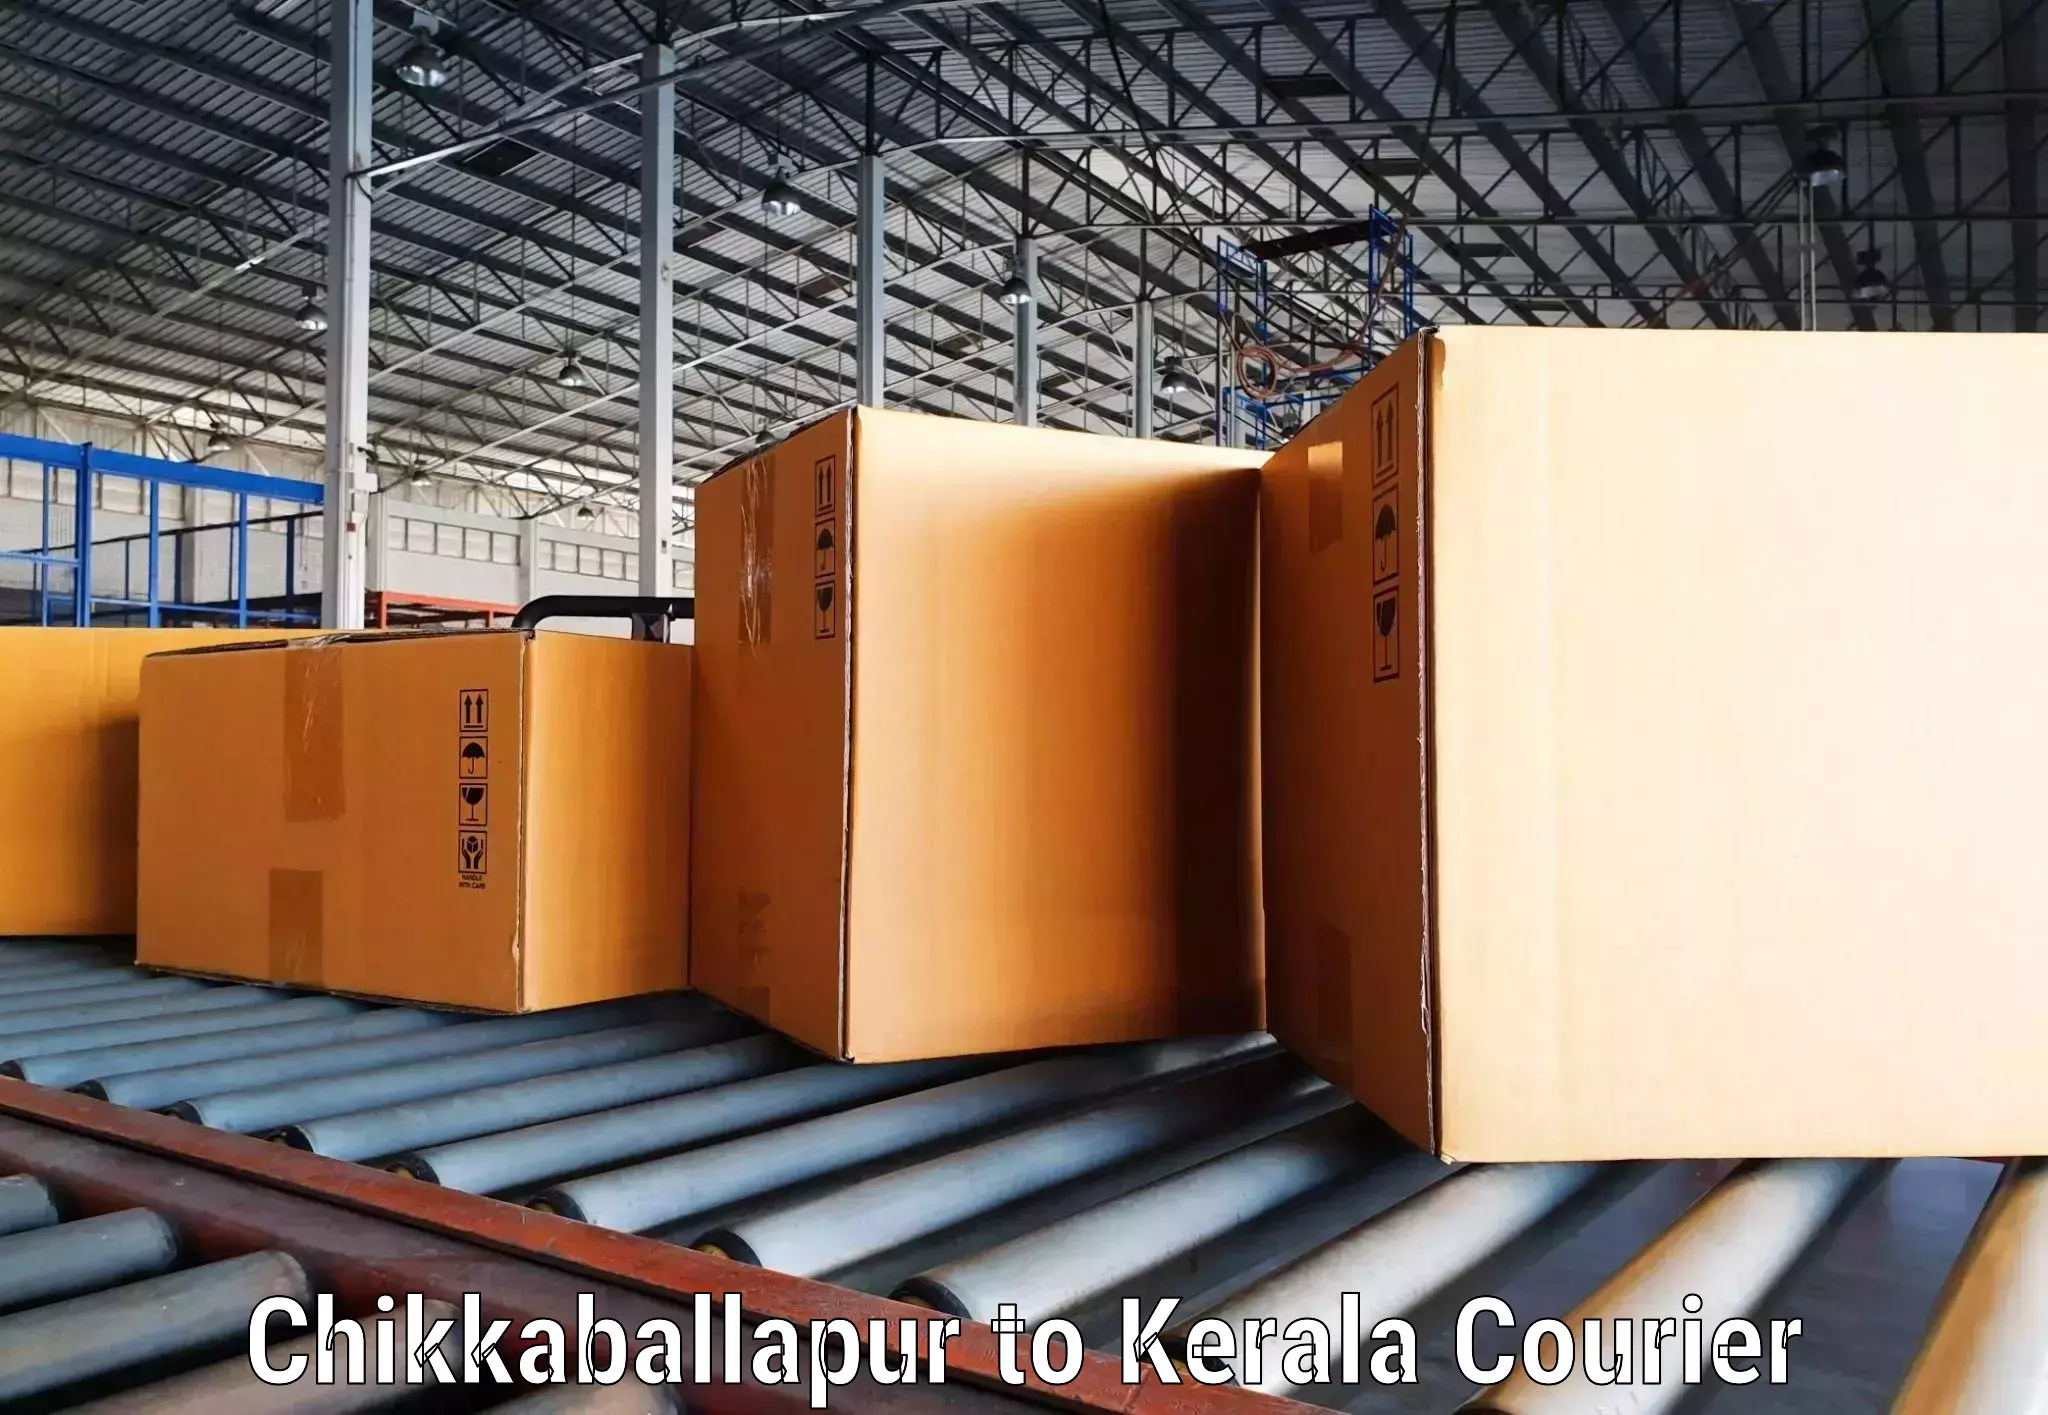 Cargo delivery service Chikkaballapur to Kalluvathukkal